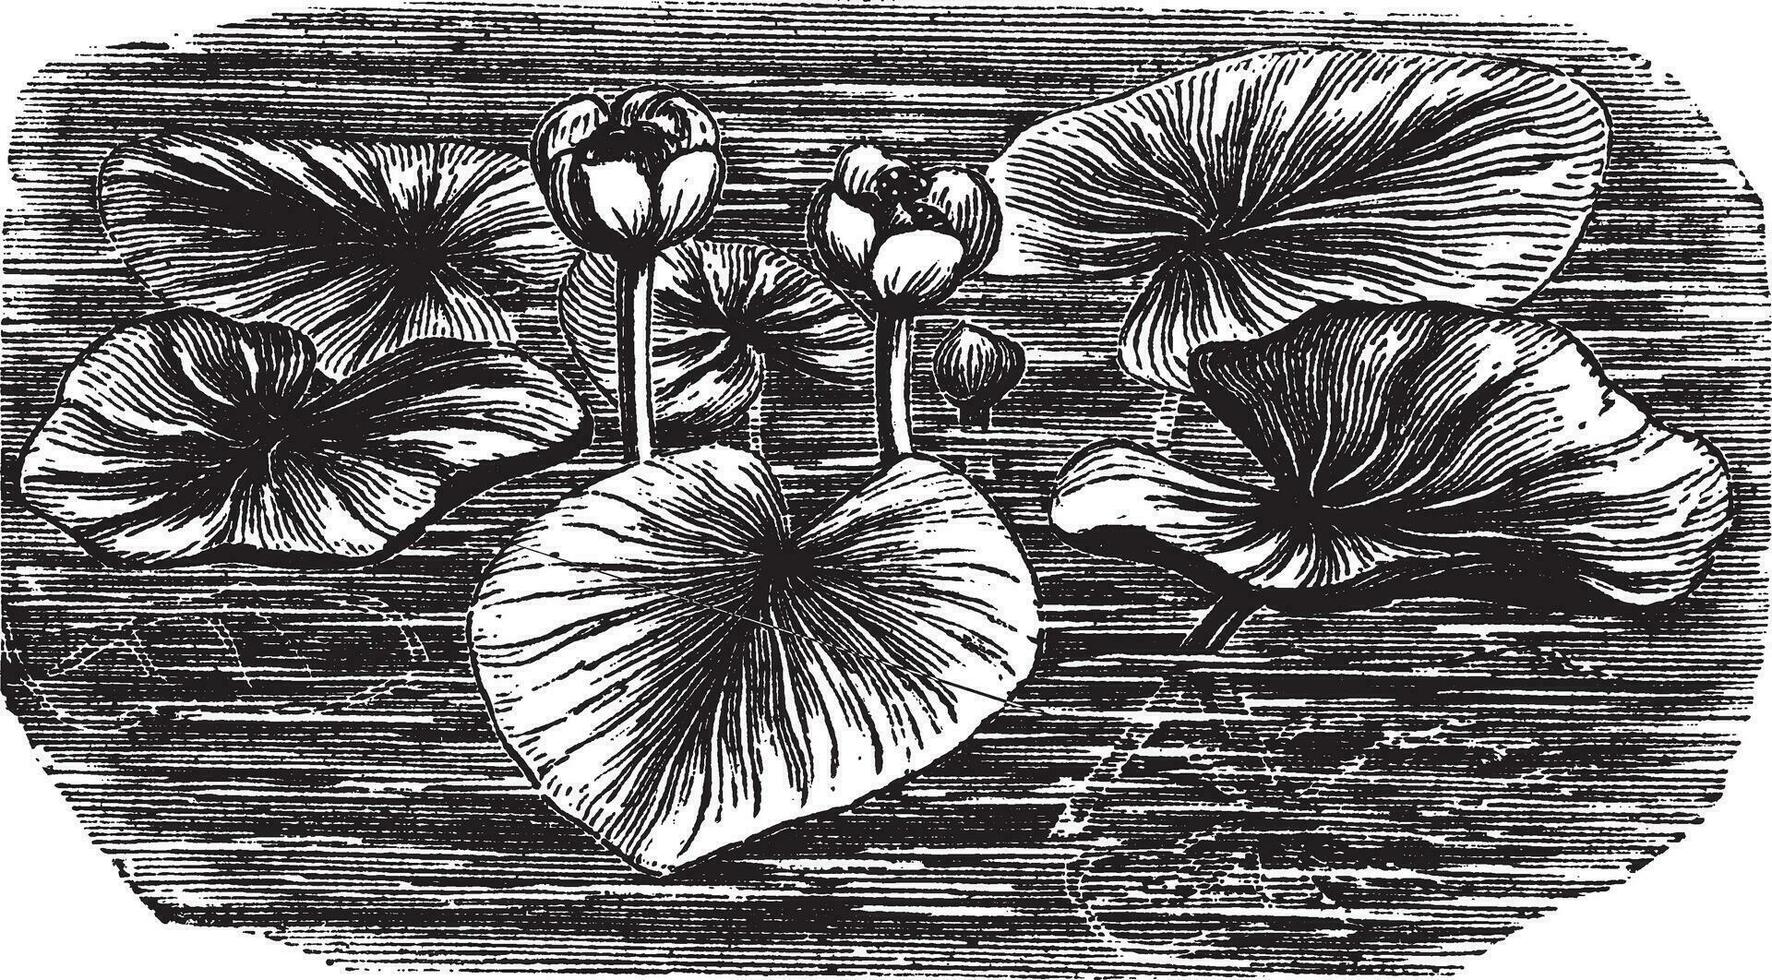 geel Waterlelie of nupha lutea, wijnoogst gegraveerde illustratie vector